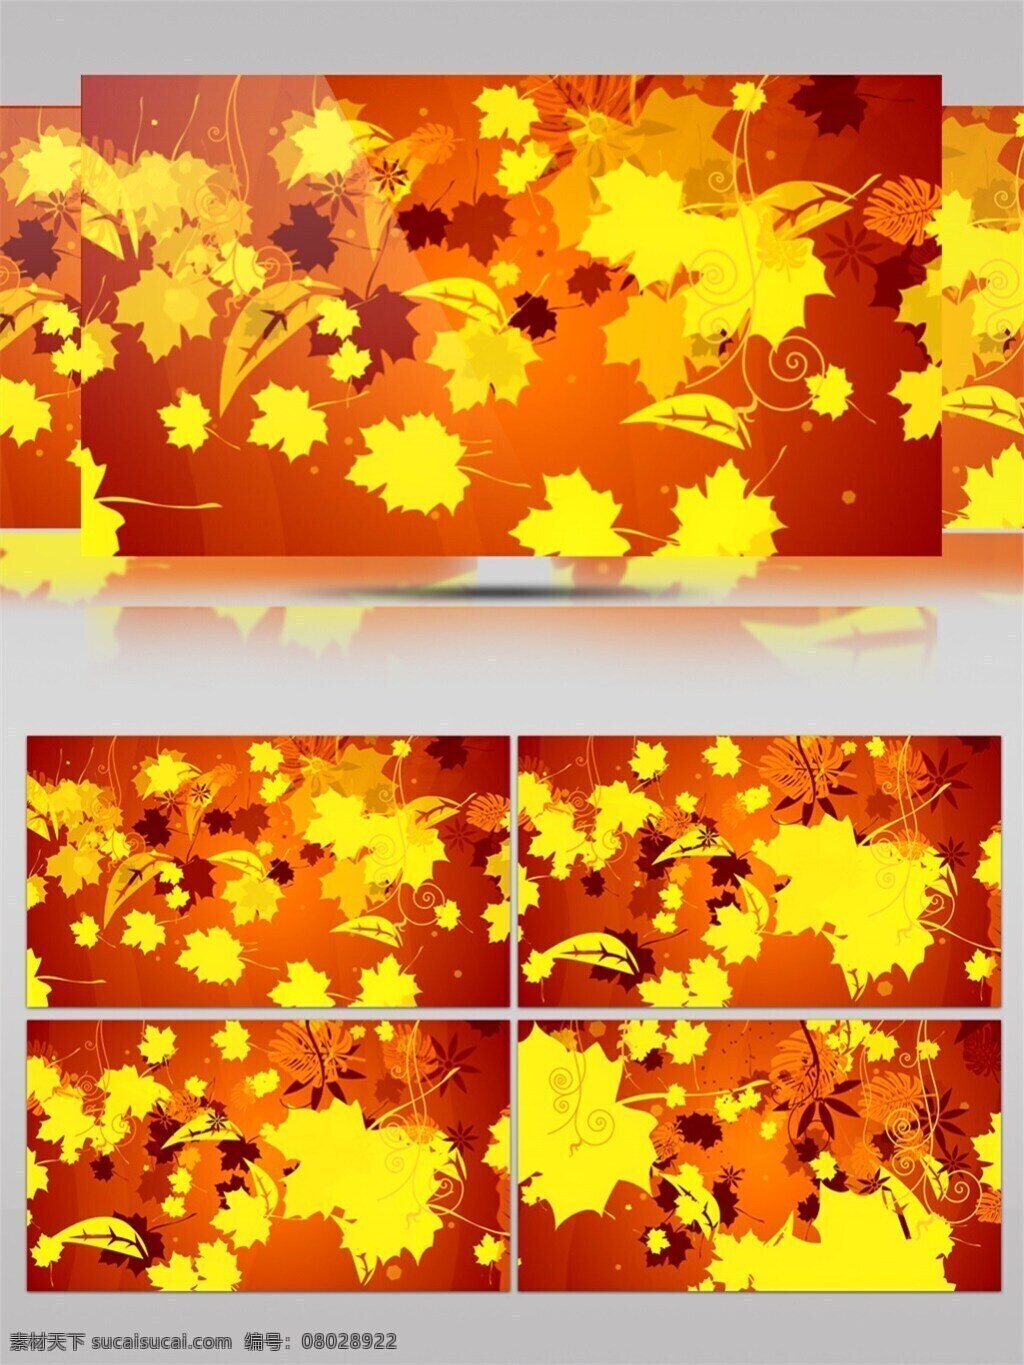 黄色 枫叶 高清 视频 背景 黄色枫叶 秋天素材 特效 炫酷暖色